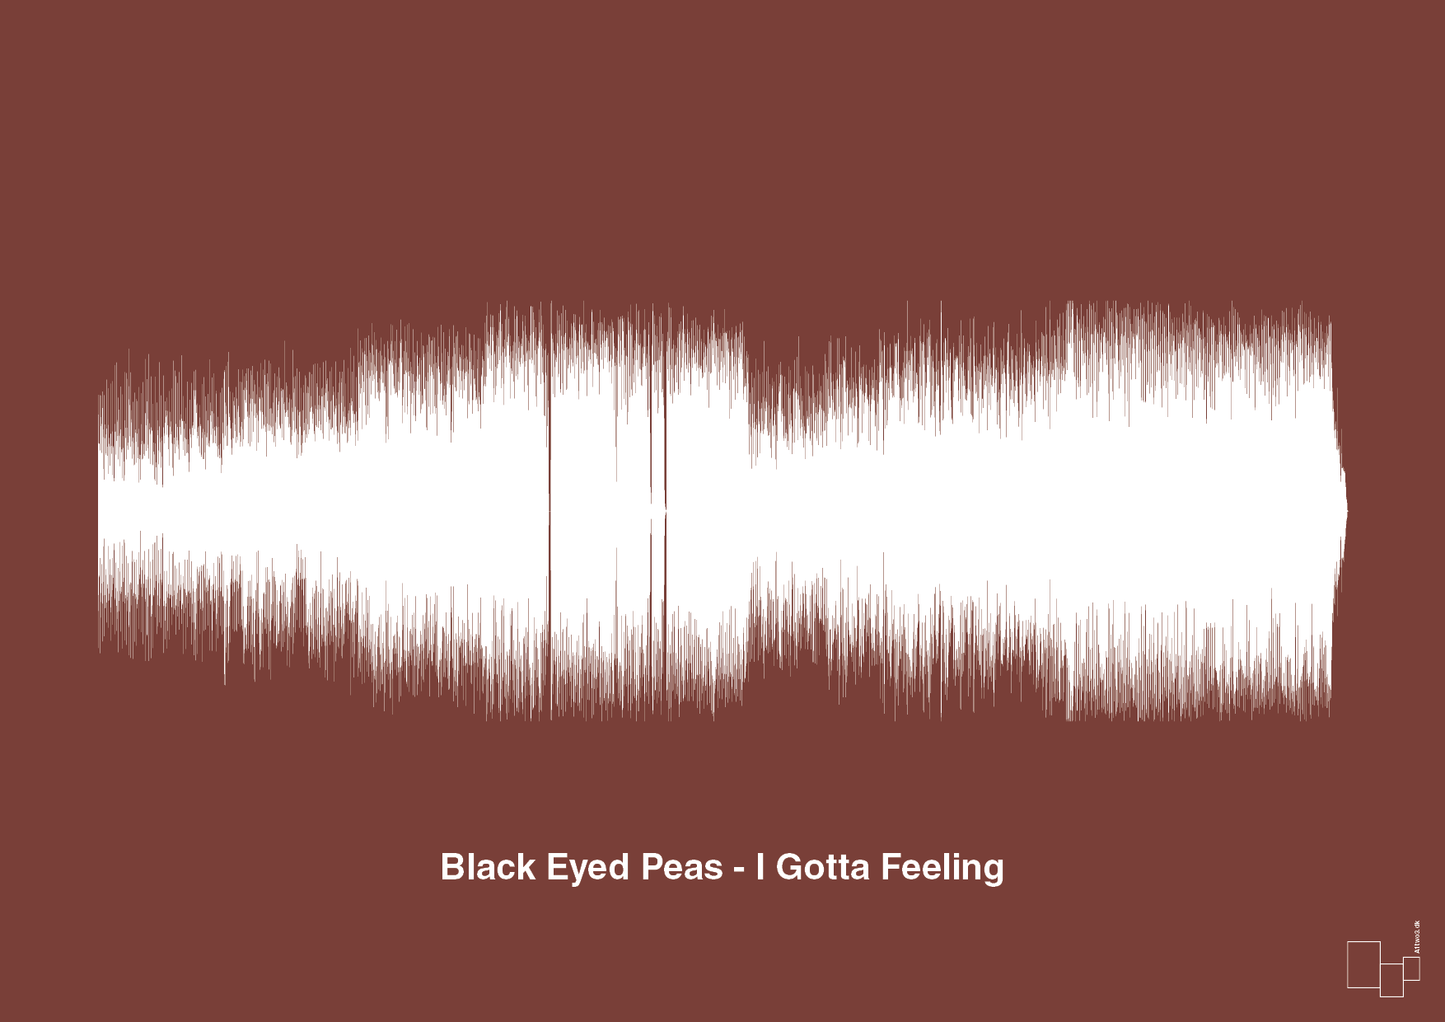 black eyed peas - i gotta feeling - Plakat med Musik i Red Pepper